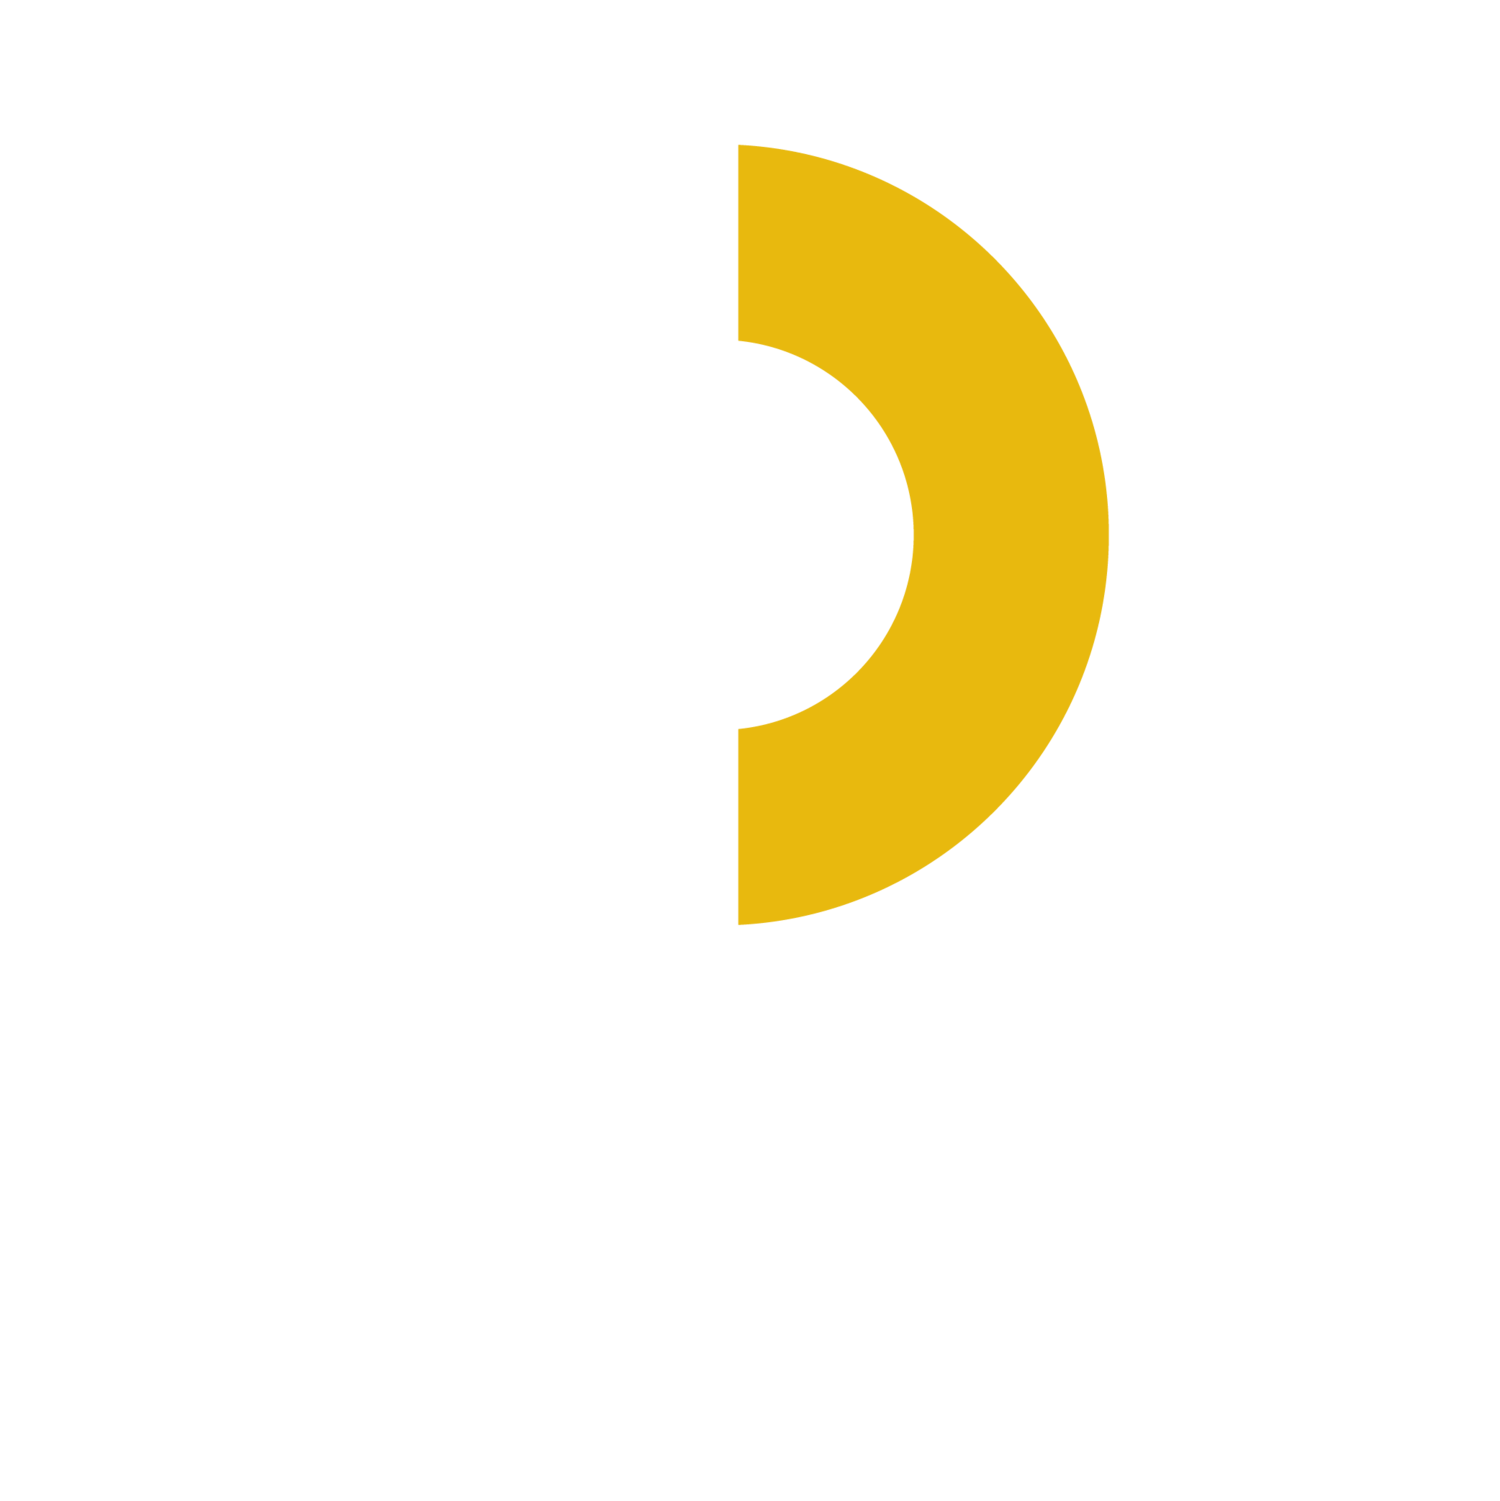 Design Central